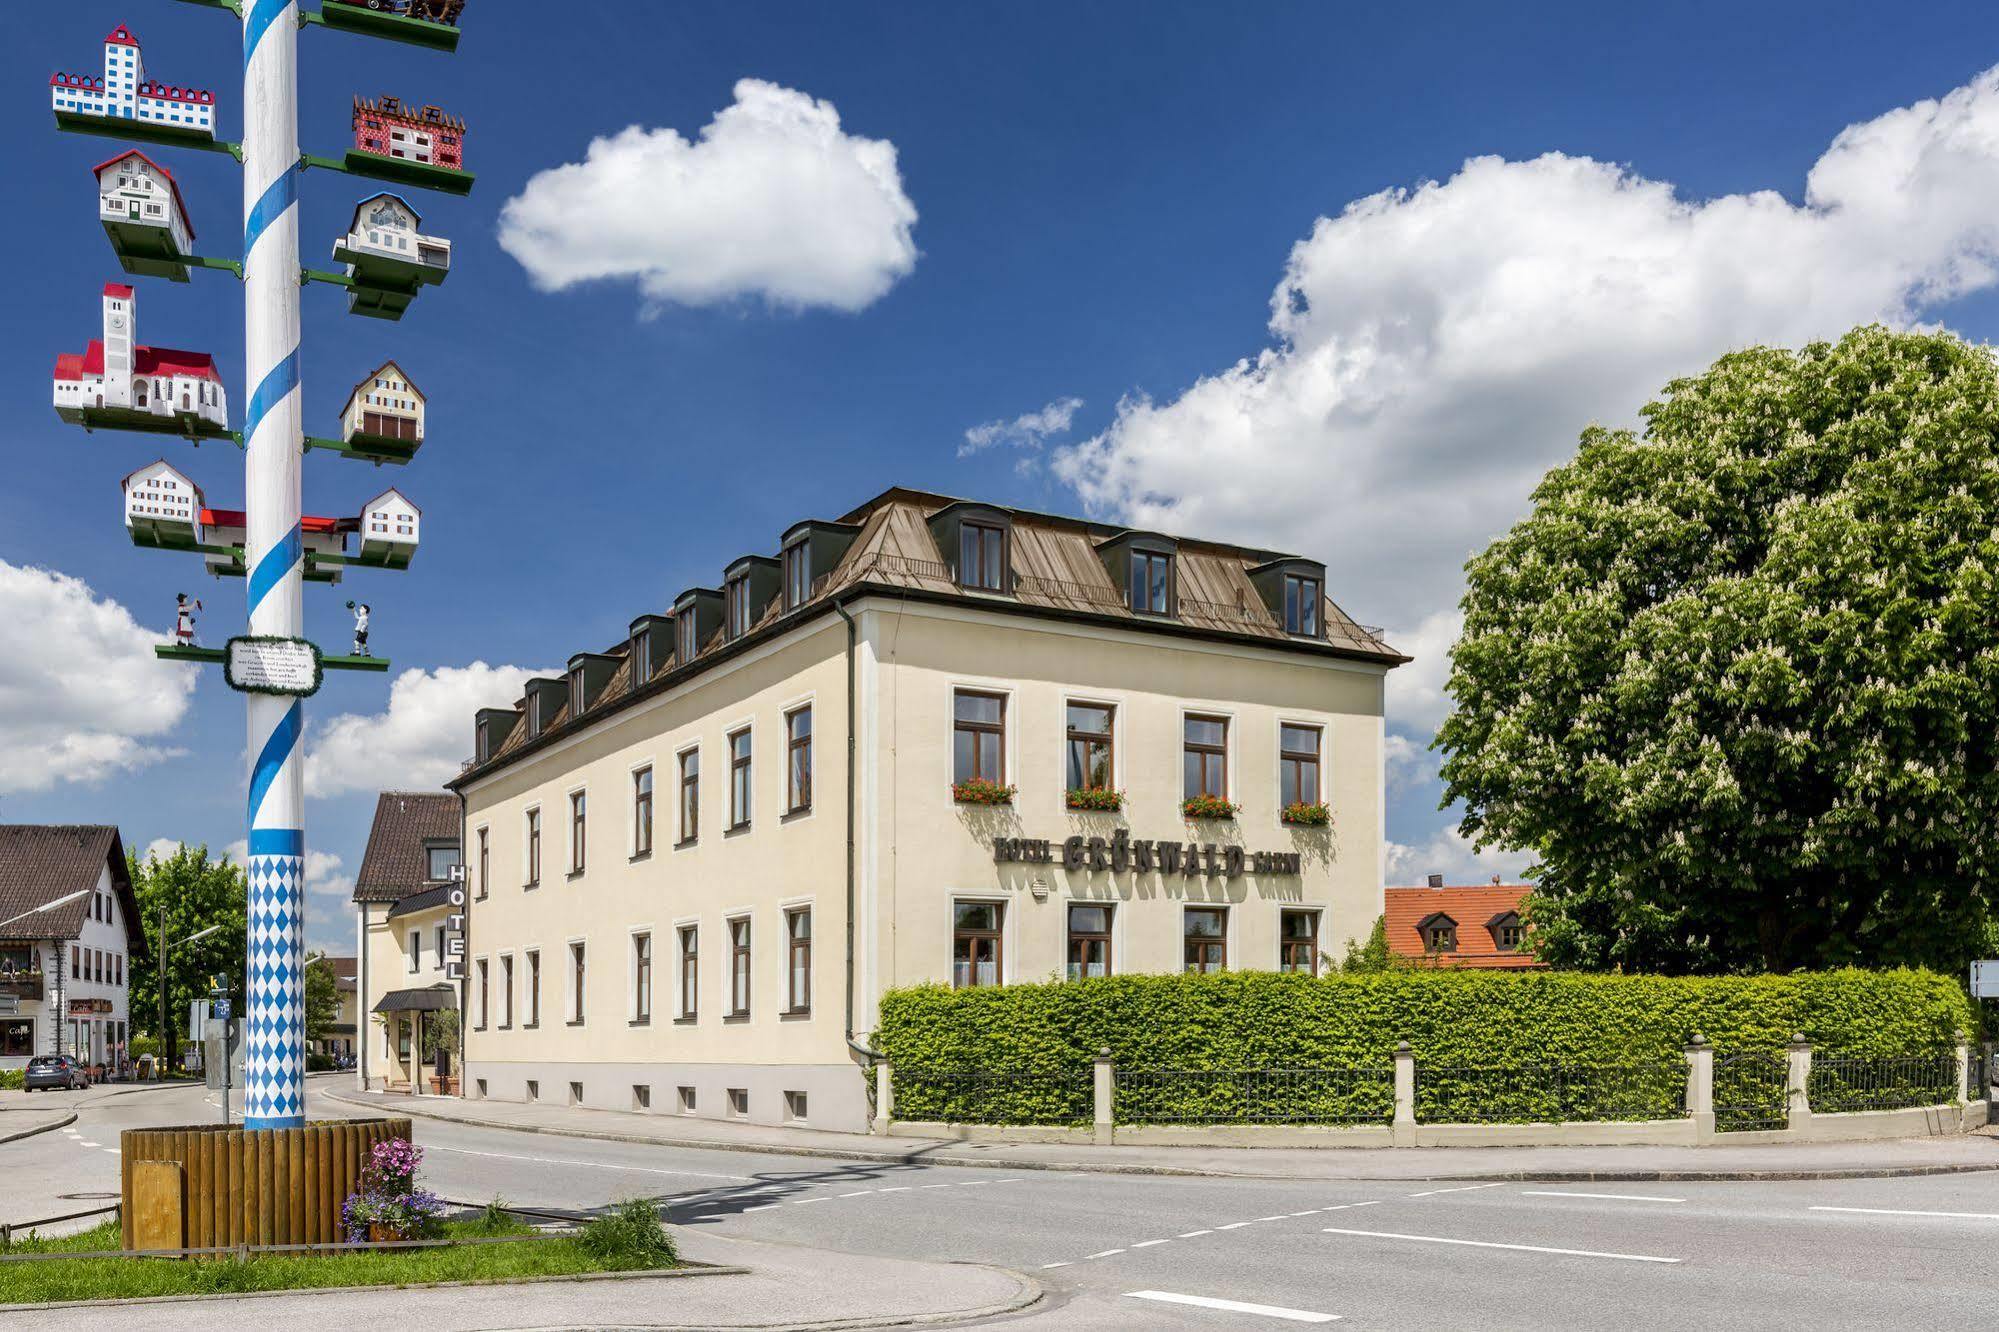 Hotel Grunwald Munich Exterior photo